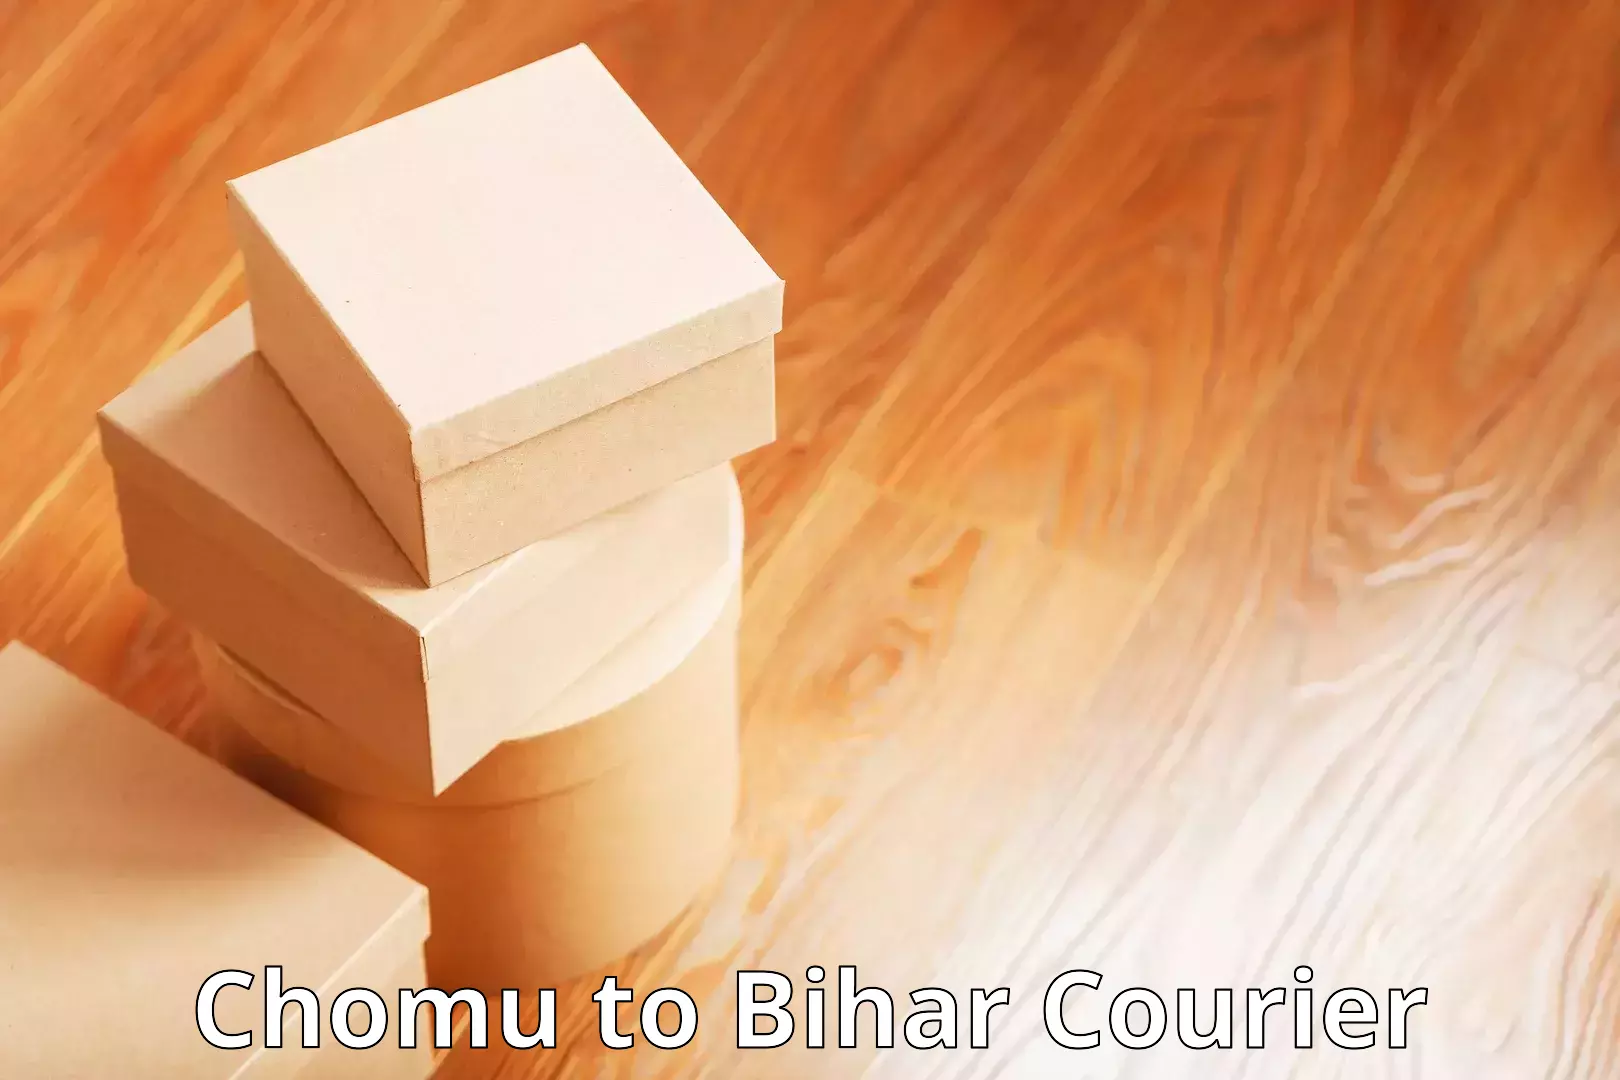 Door-to-door shipment in Chomu to Bihar